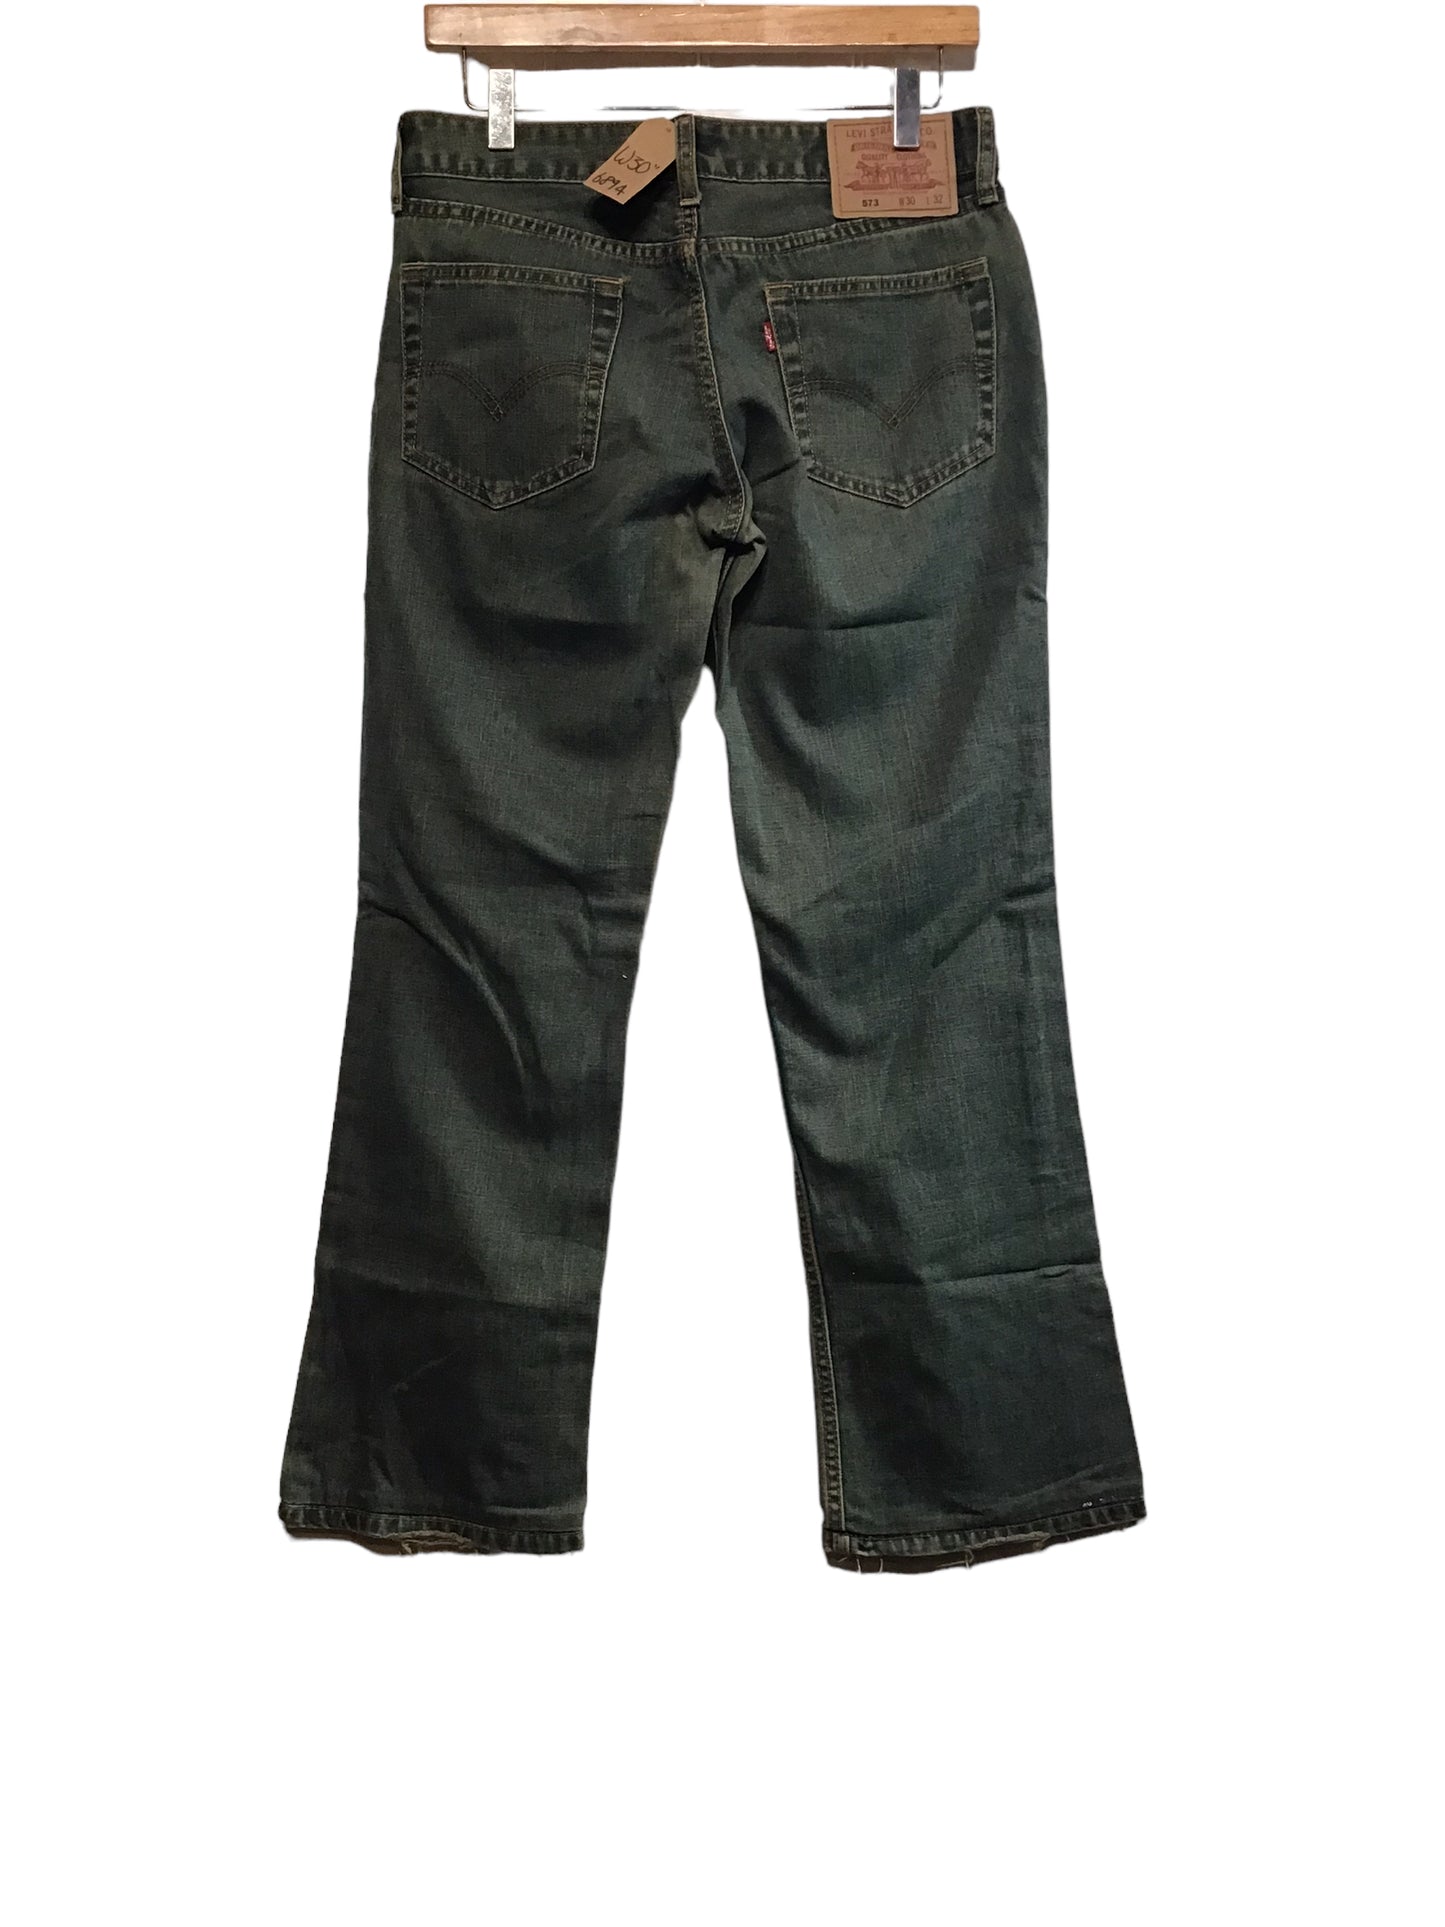 Levi 573 Jeans (30x32)